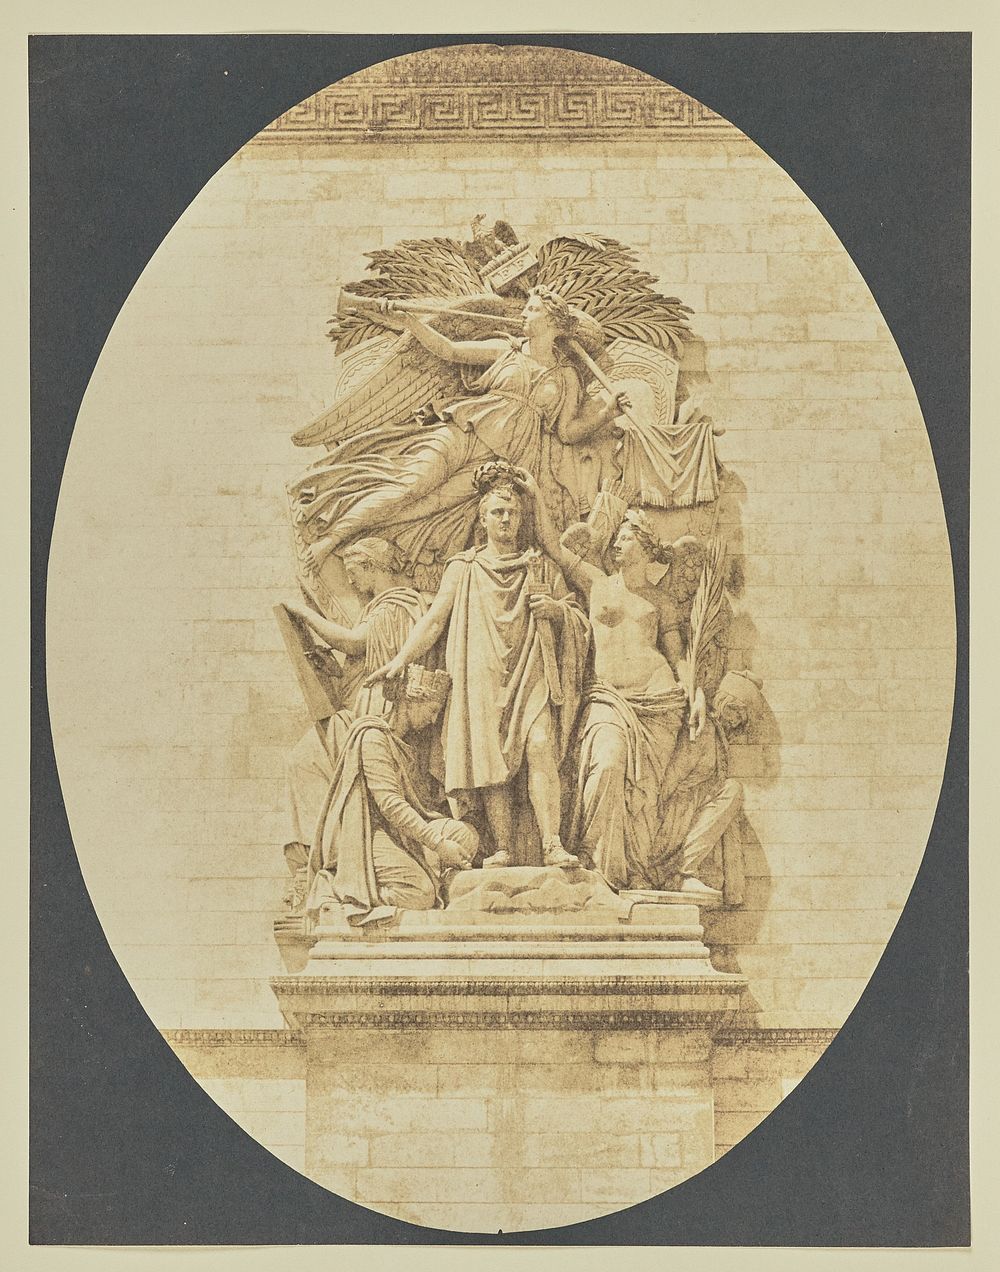 Detail of "Le Triomphe de 1810", Arc de Triomphe by Hippolyte Bayard